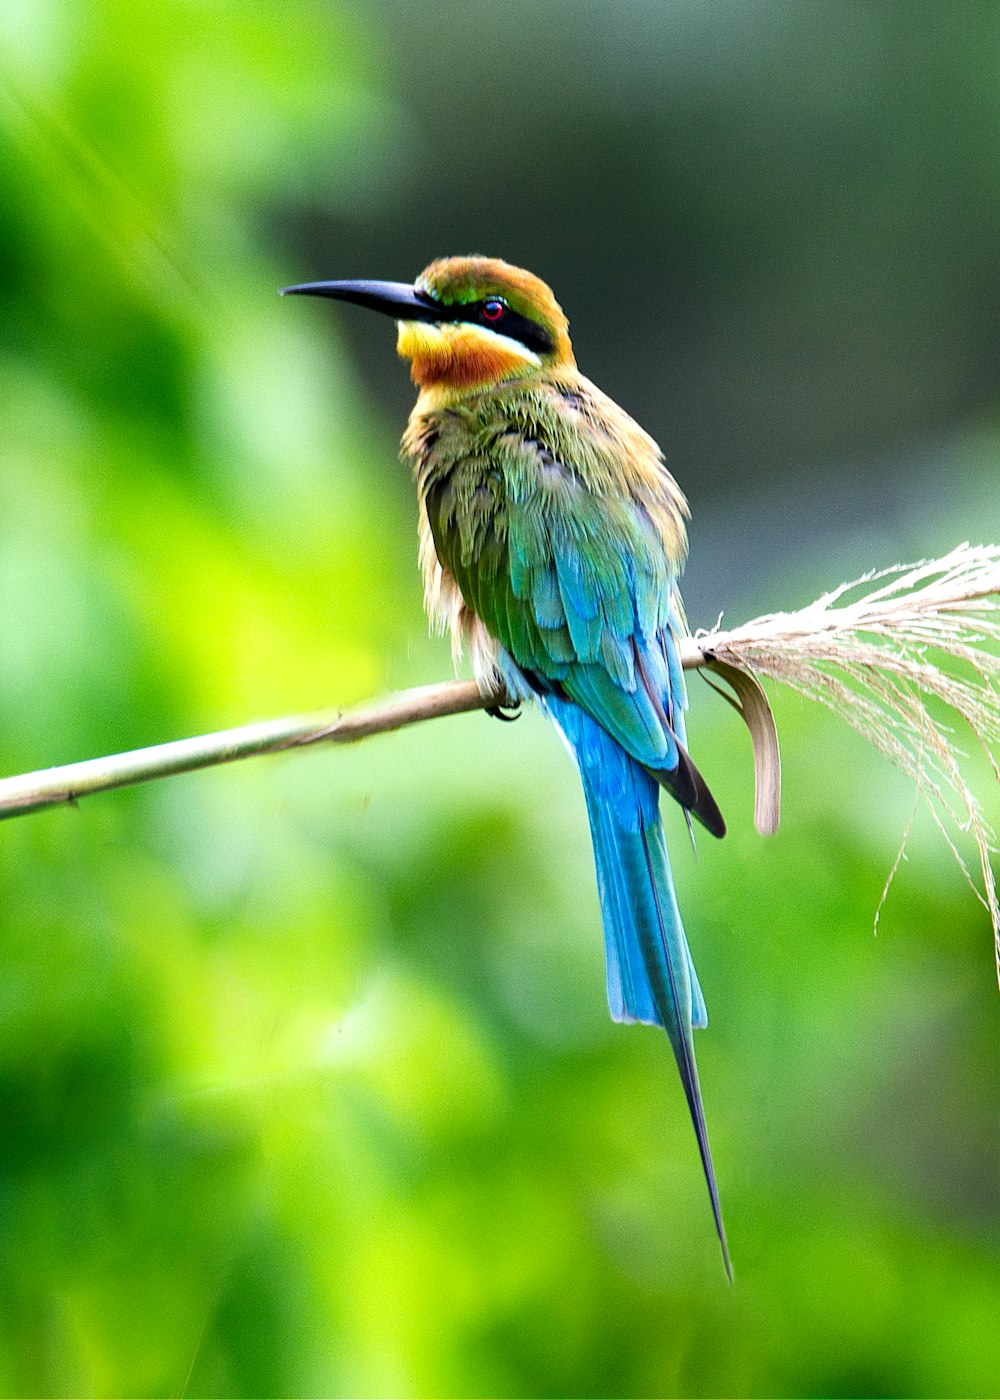 pájaro de pico largo azul, amarillo y verde en la rama durante el día